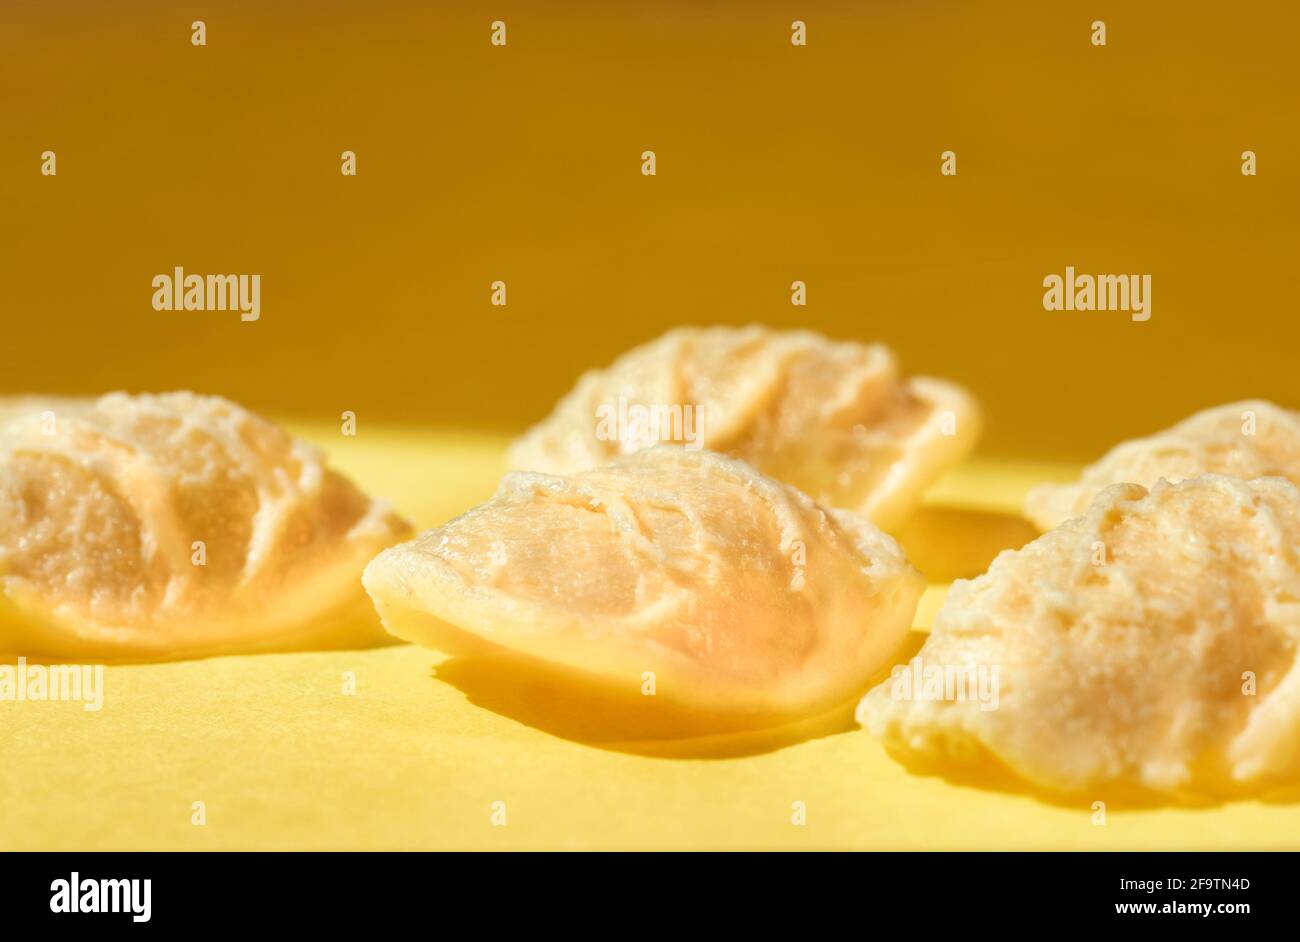 Orecchiette Pasta auf farbigem Hintergrund, eine kleine ohrförmige Pasta Mit der Mitte dünner als die Kante und eine raue Oberfläche Stockfoto